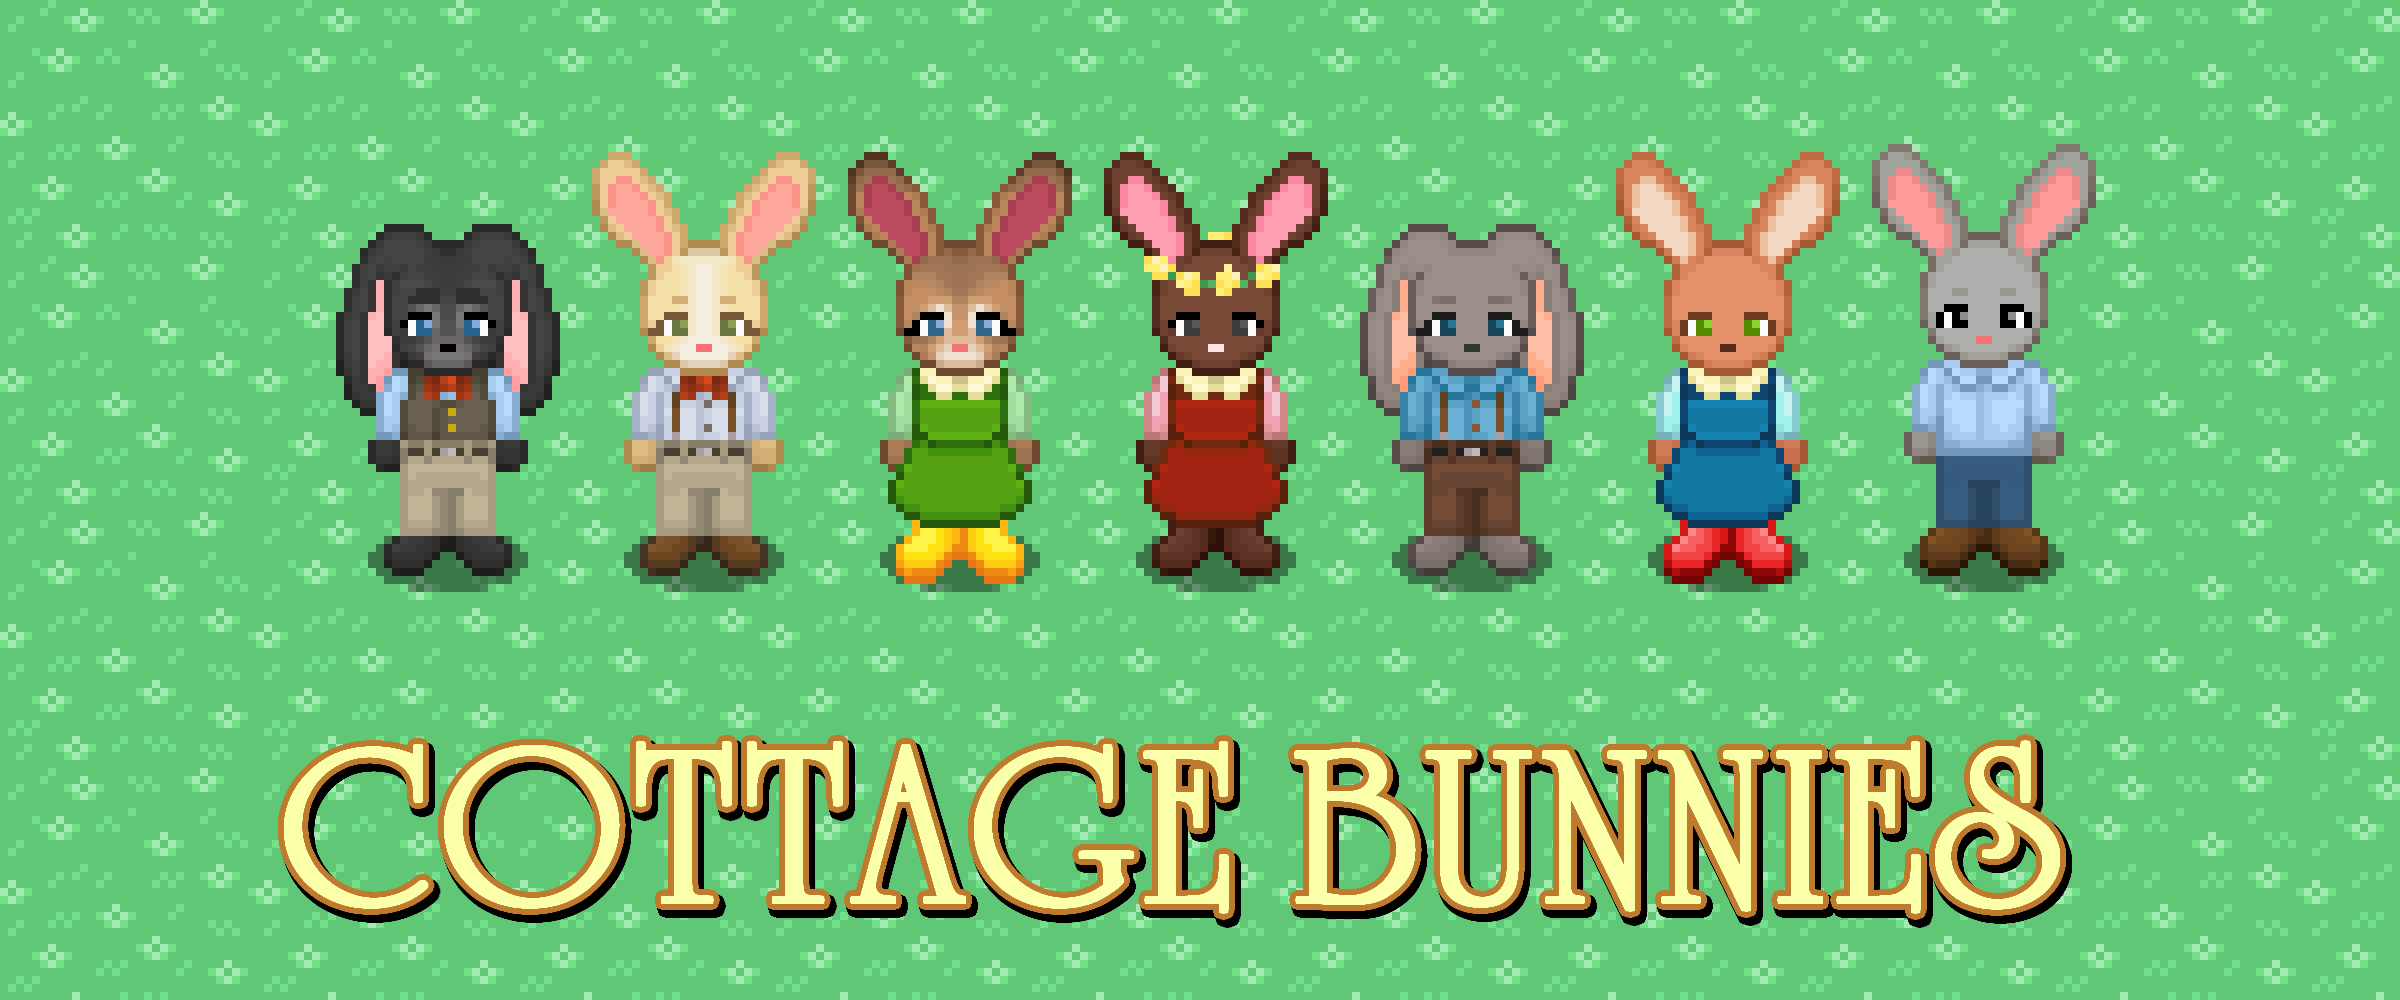 Cottage Bunnies || Pixel Asset Pack